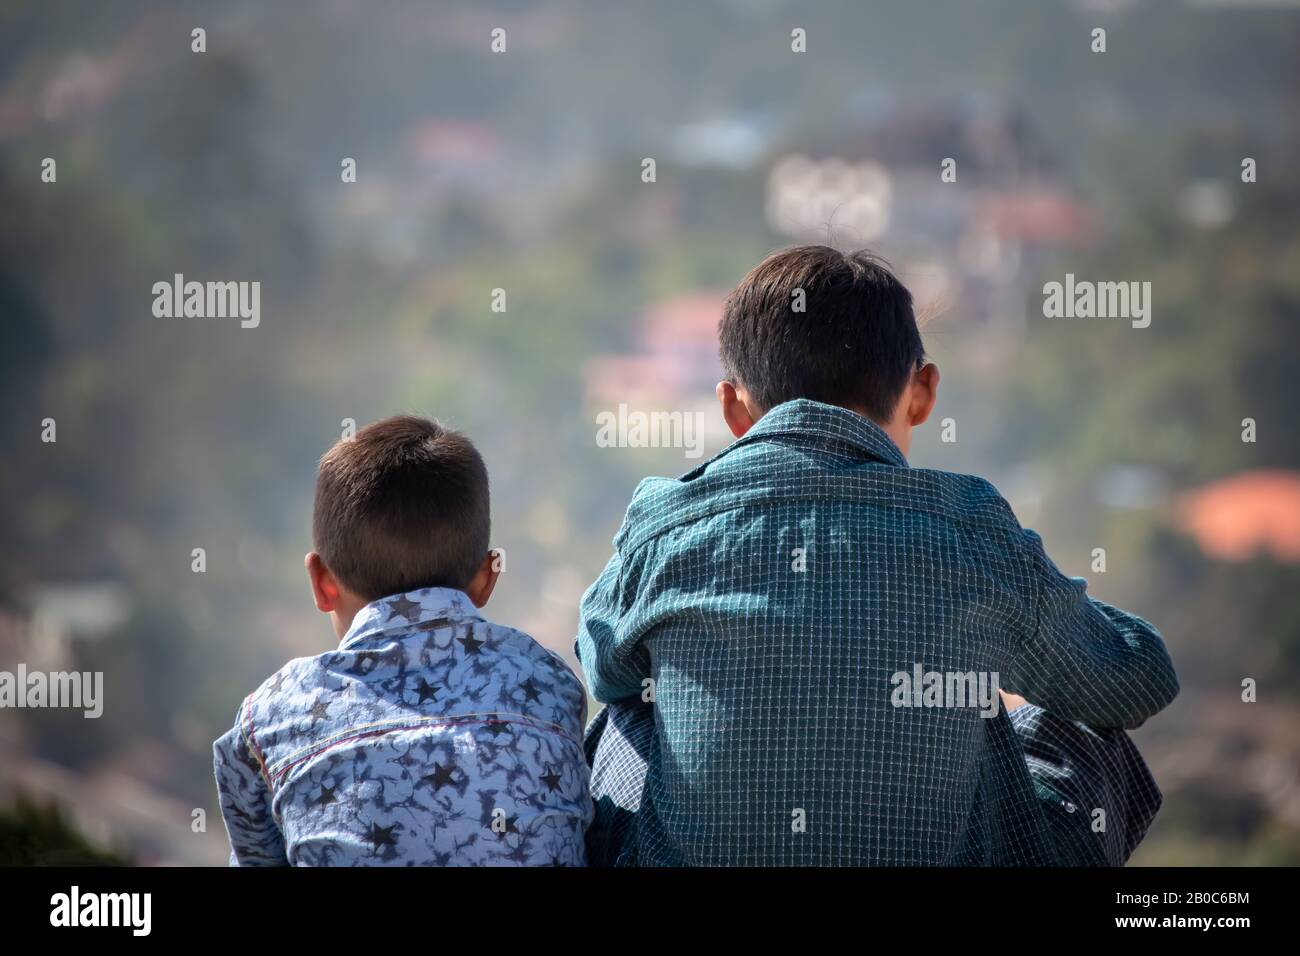 Kalaw, Myanmar - Février 2020: Scène idyllique avec deux jeunes garçons dans des chemises colorées, dos à l'appareil photo, vue sur la distance. Banque D'Images